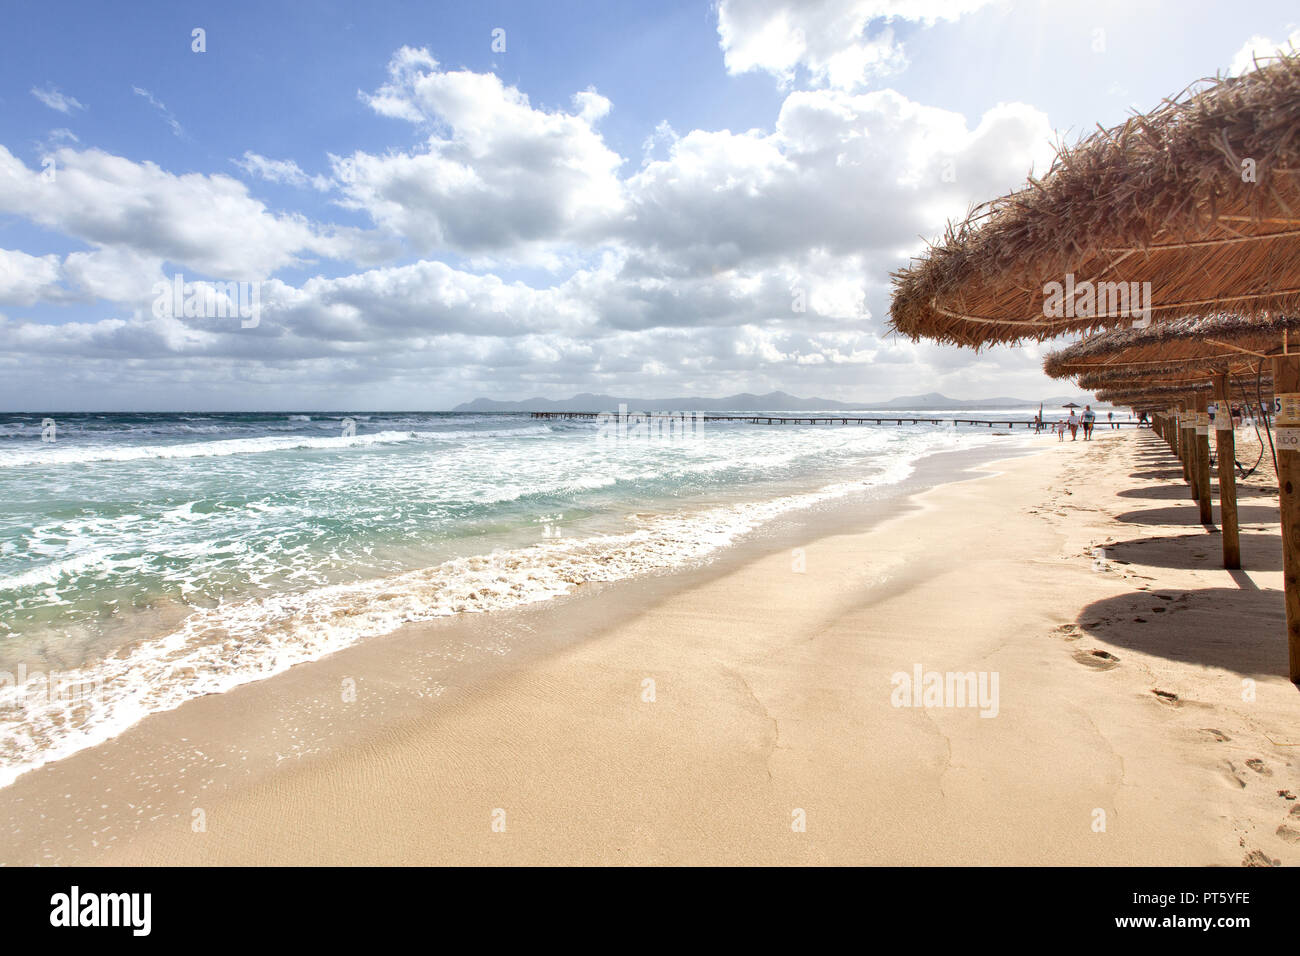 L'Europe du Nord l'Espagne Majorque Playa de Muro, longue jetée en bois dans la baie d'Alcudia au cours de violente tempête Banque D'Images